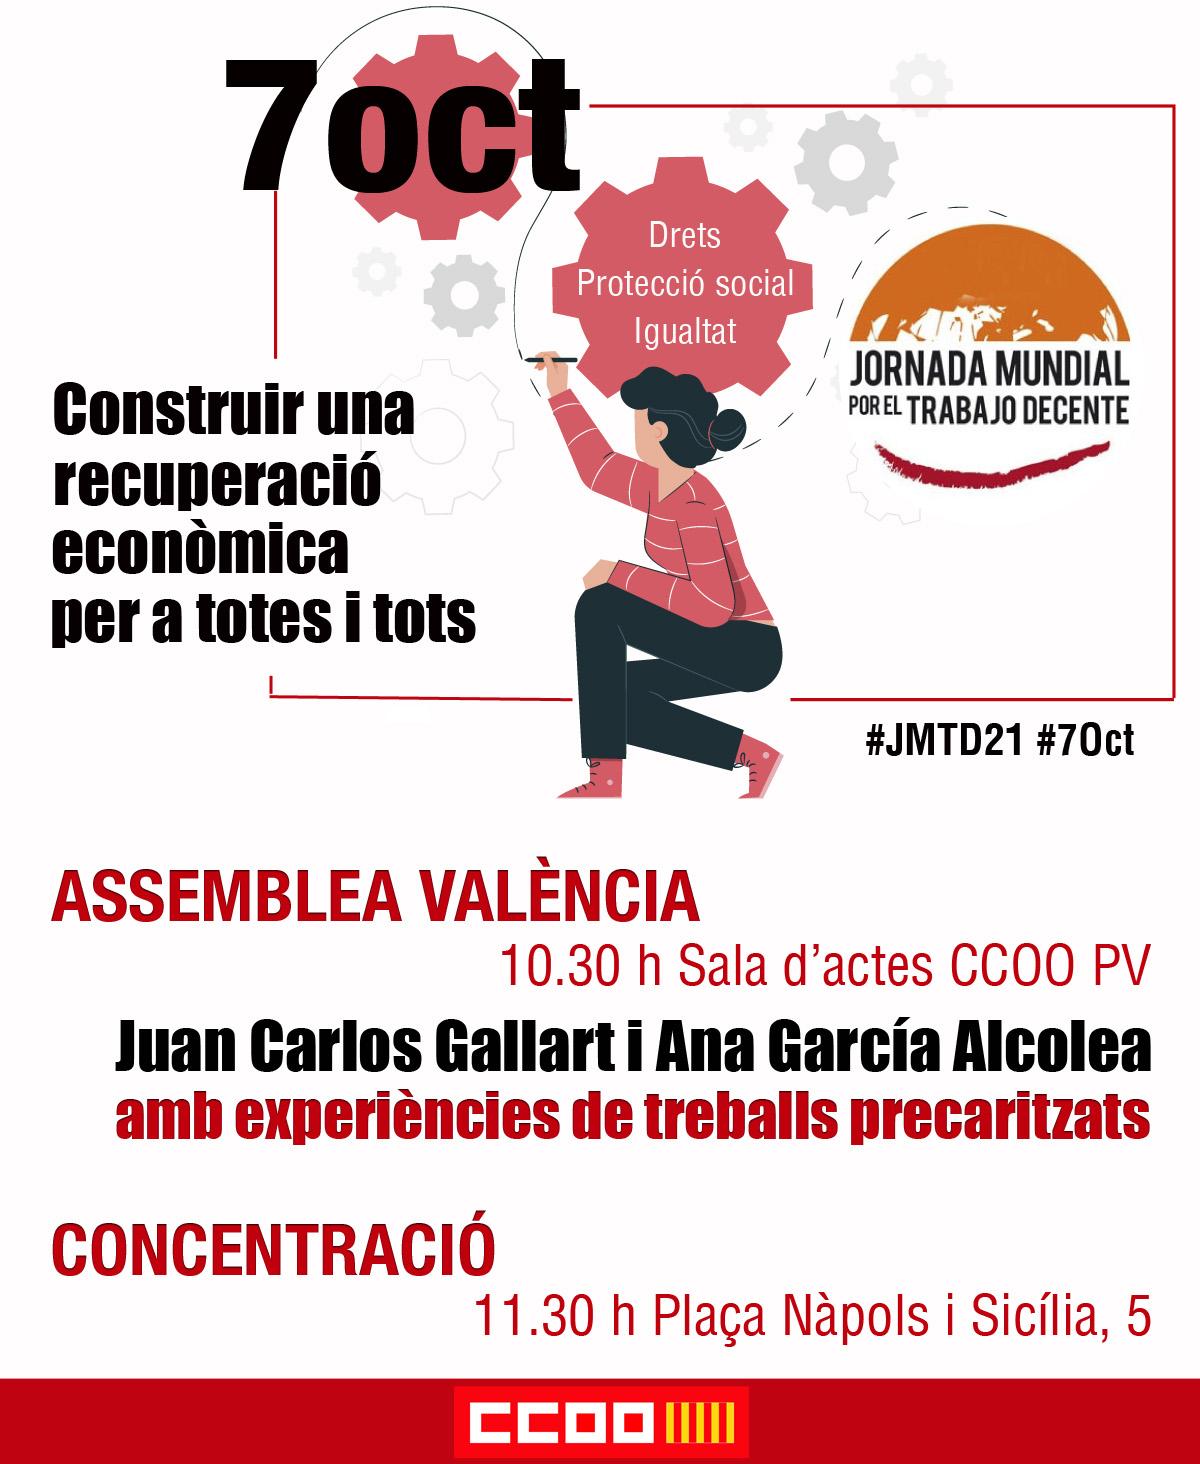 Jornada Mundial pel Treball Decent 2021. Acte a València.